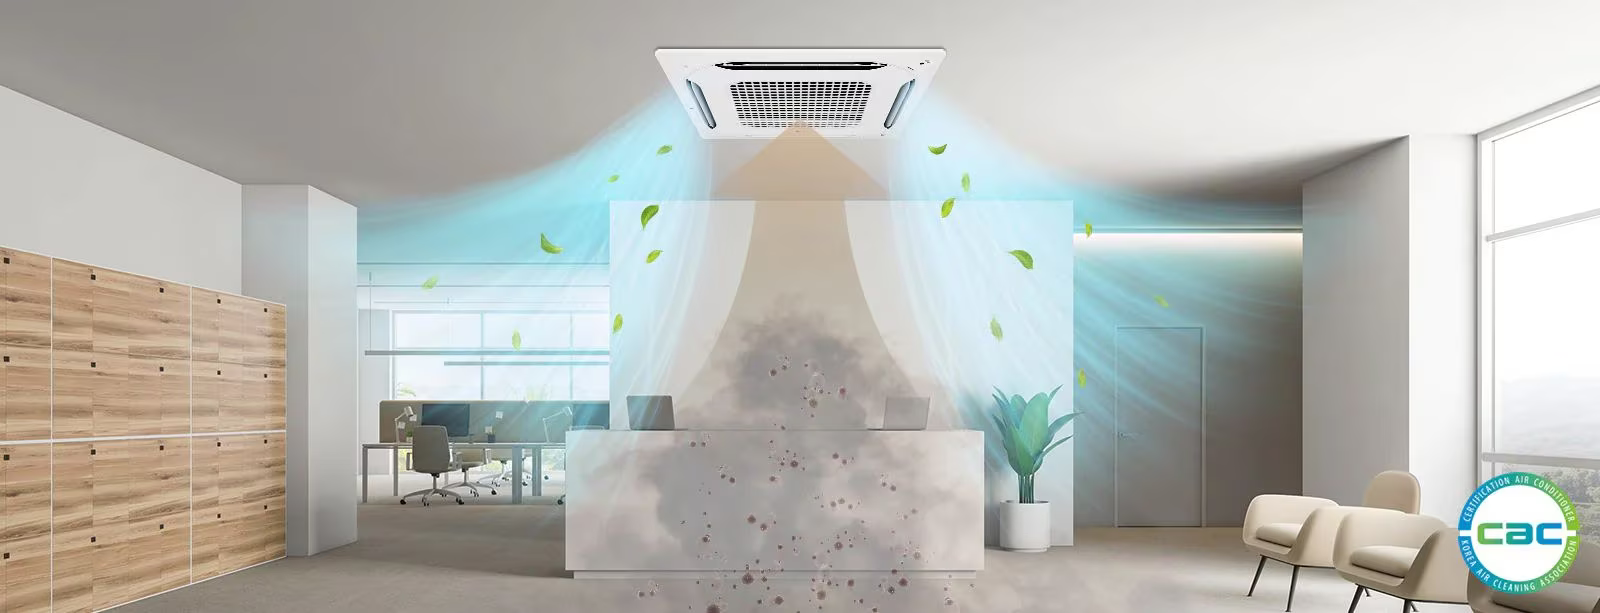 El nuevo módulo con purificación de aire ofrece una solución completa para la limpieza del aire, eliminando las partículas de polvo ultrafinas suspendidas en el ambiente. Certificado por la CAC*, este producto de alto rendimiento proporciona un aire limpio y fresco en espacios grandes.